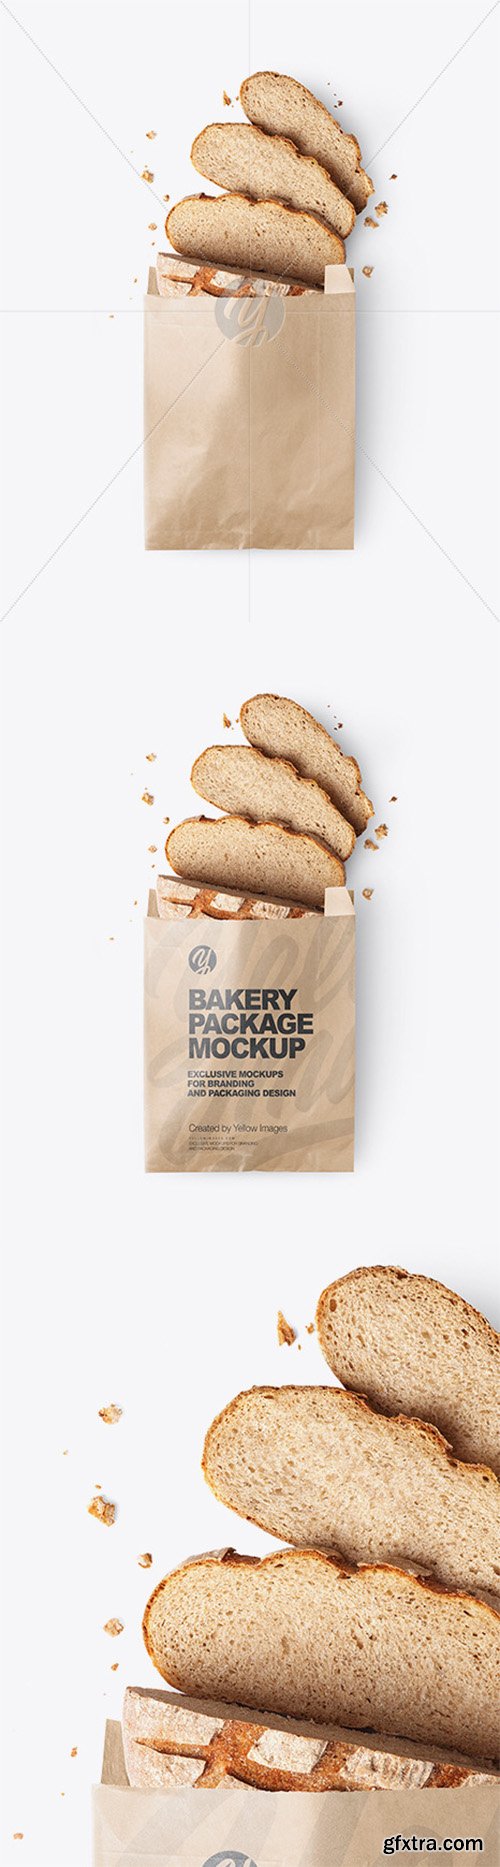 Download Kraft Paper Bakery Bag Mockup 66104 » GFxtra